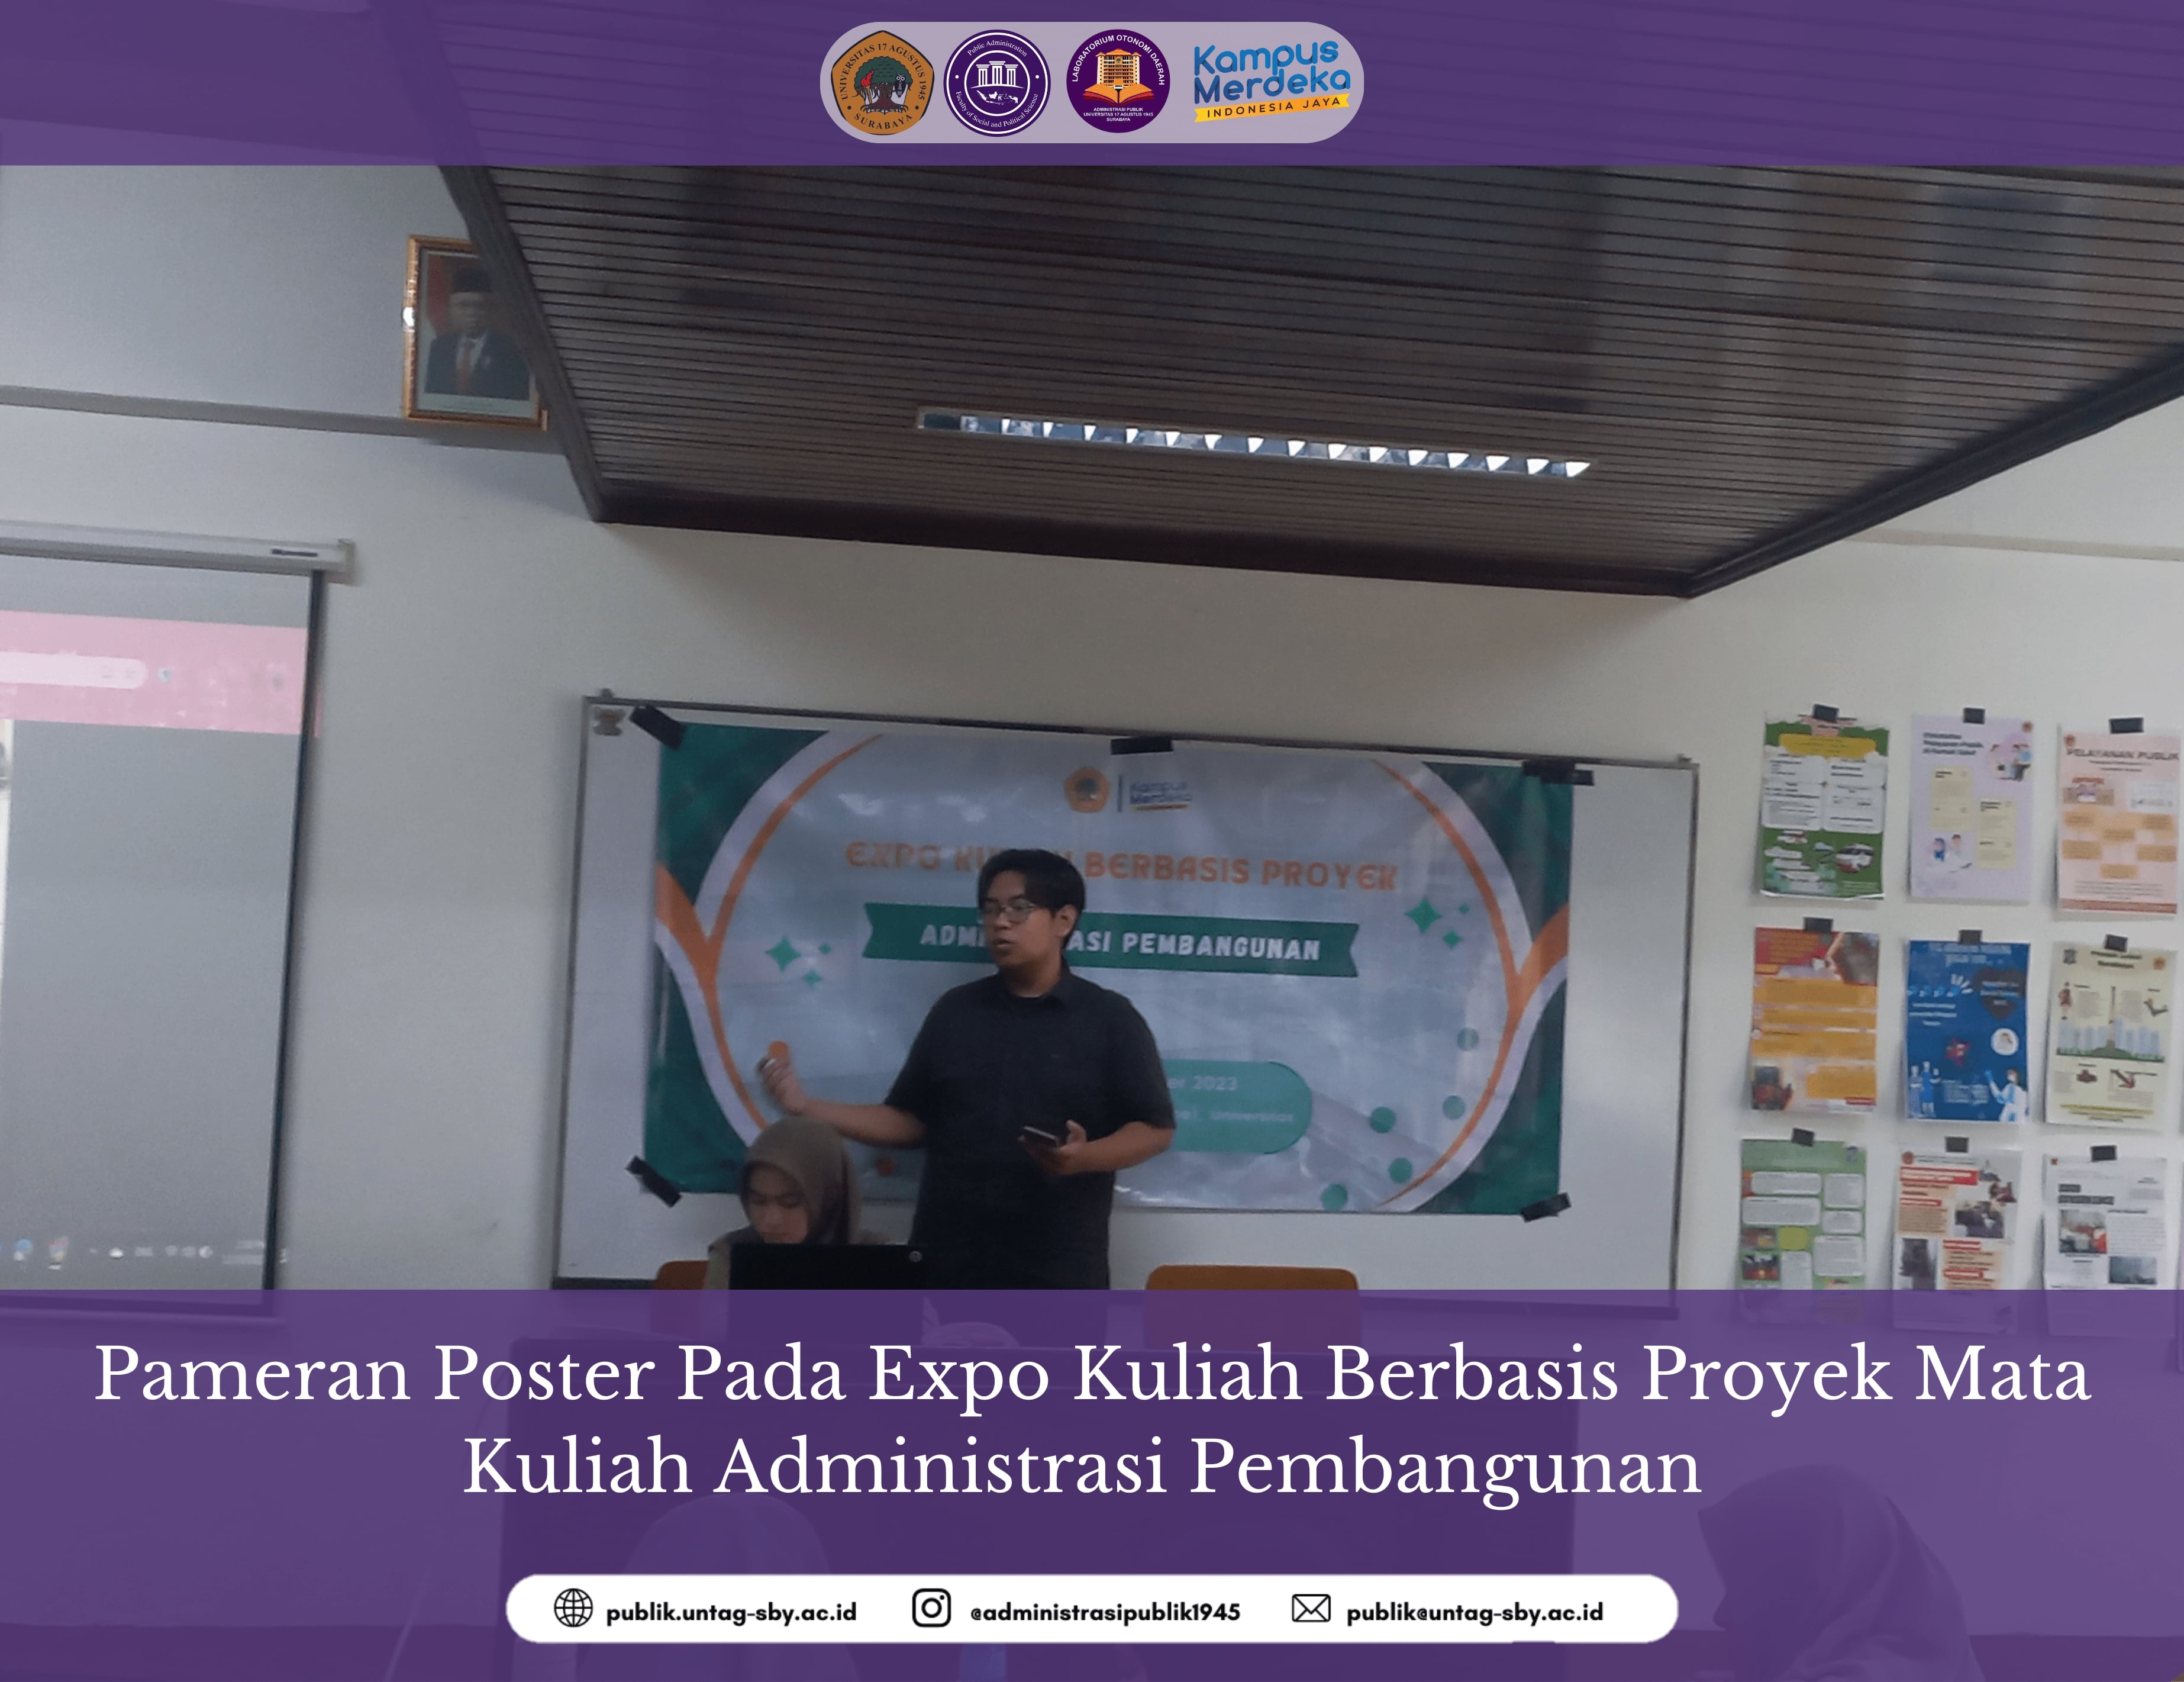 Pameran Poster Pada Expo Kuliah Berbasis Proyek Mata Kuliah Administrasi Pembangunan